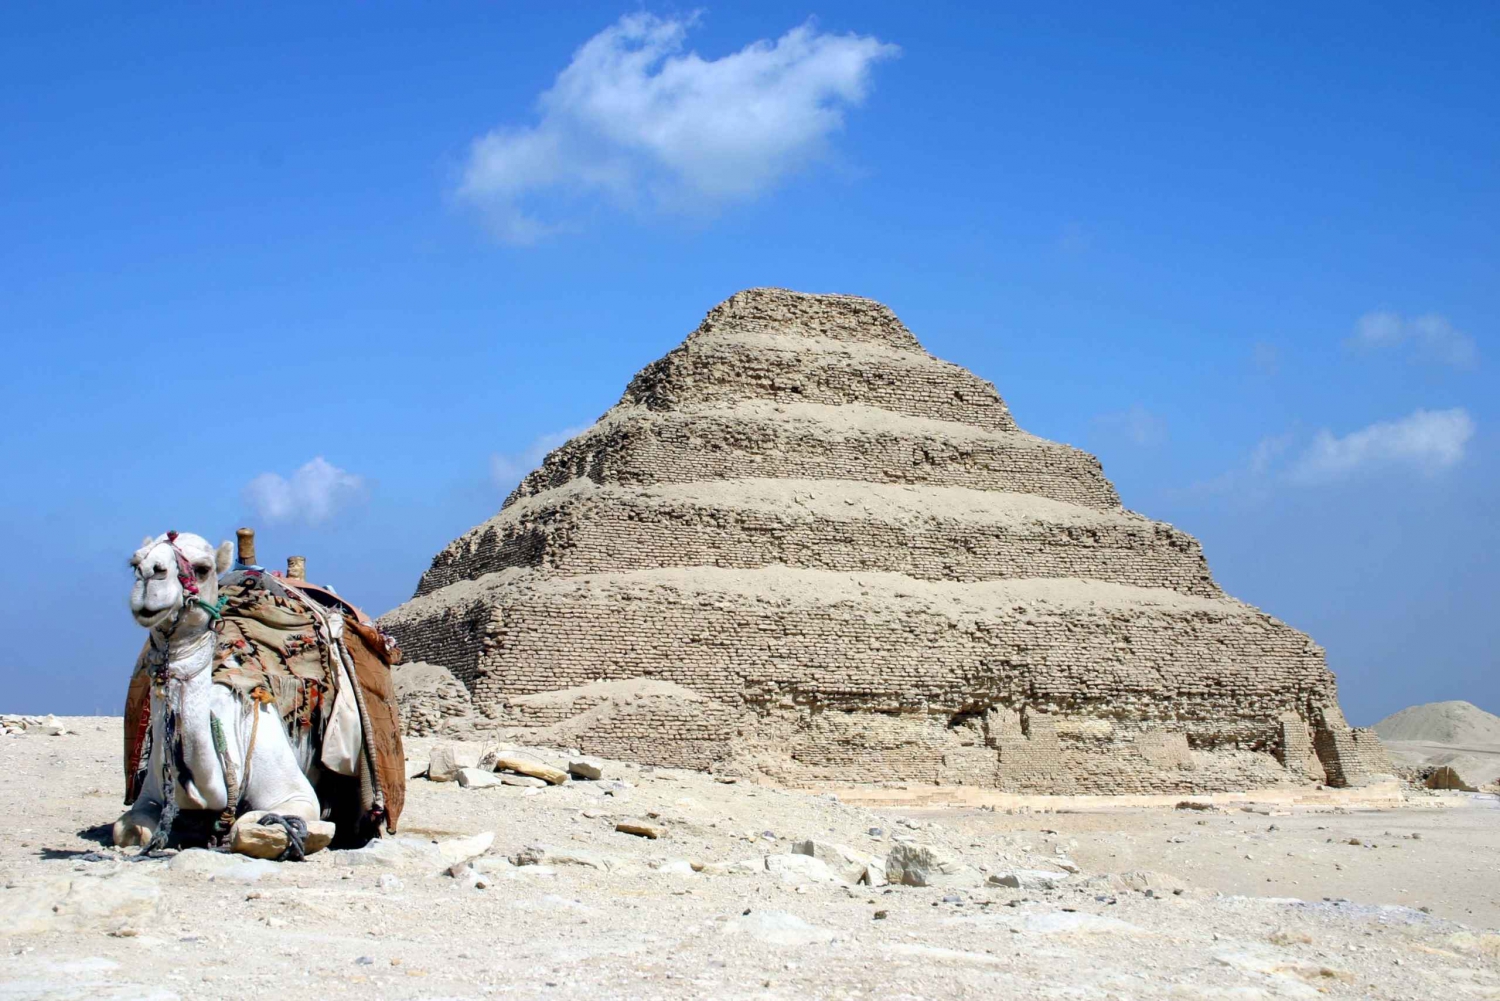 Cairo: Djoser, Bent Pyramid & Memphis Day Trip